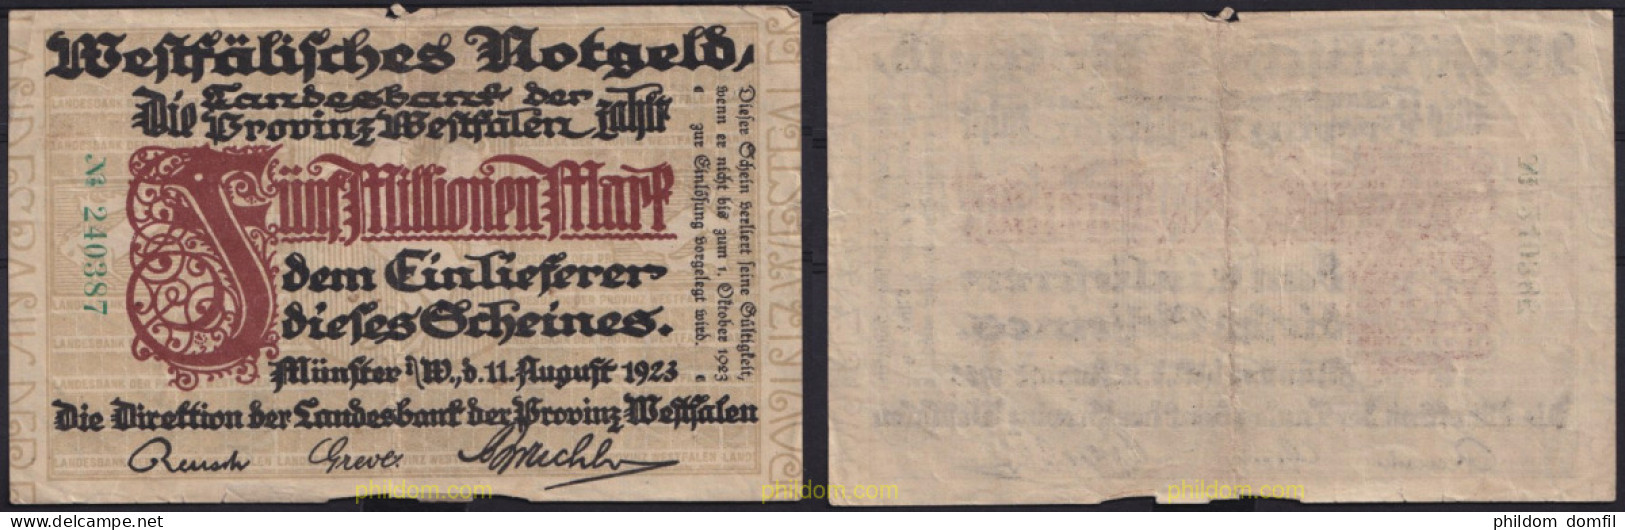 3667 ALEMANIA 1923 GERMANY 5000000 MARK 1923 MÜNFER - Reichsschuldenverwaltung